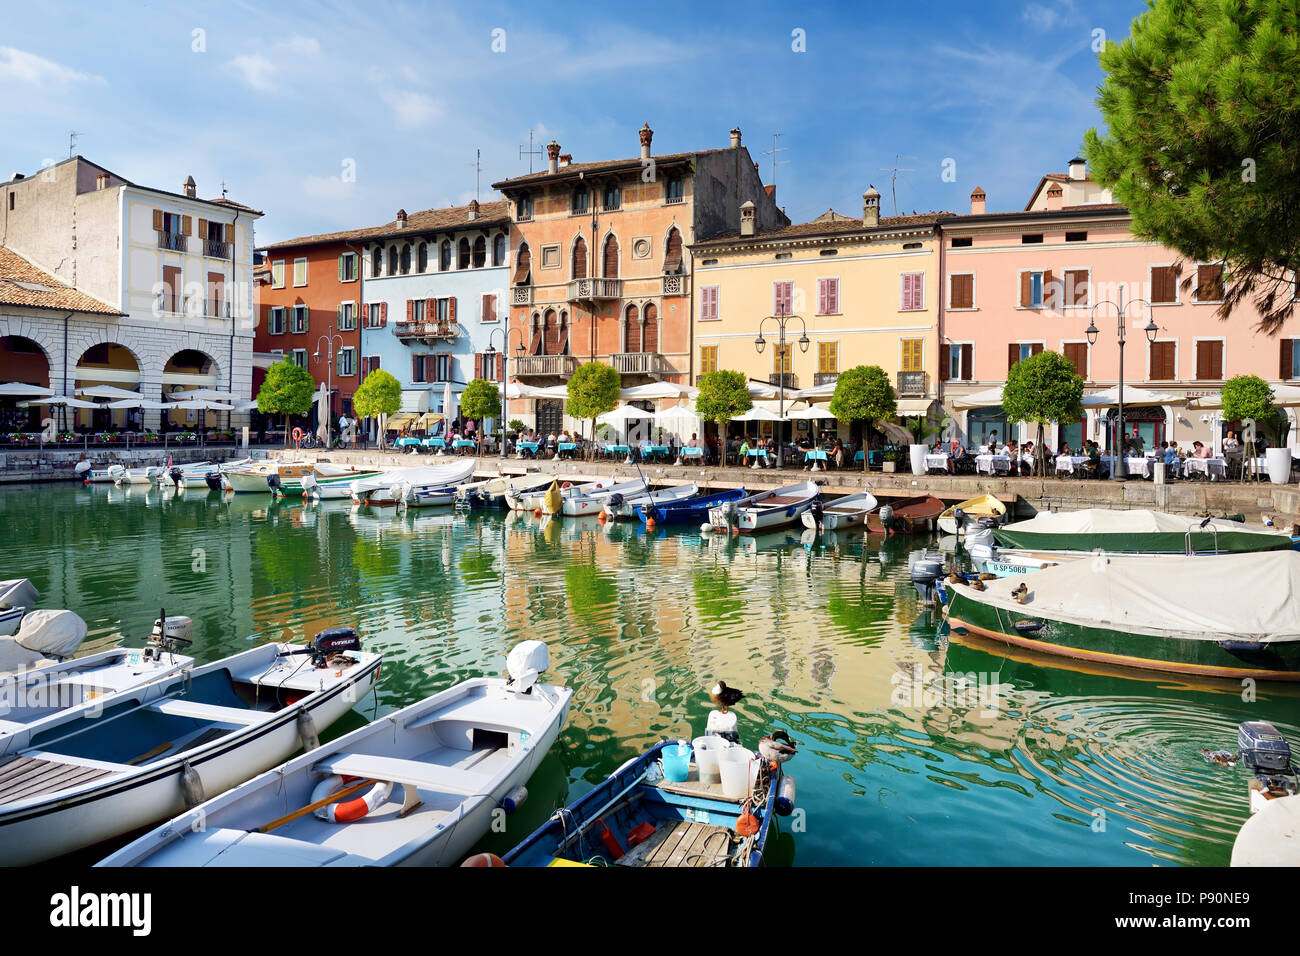 DESENZANO DEL GARDA, ITALY - SEPTEMBER 23, 2016: Beautiful views of Desenzano del Garda, a town and comune in the province of Brescia, in Lombardy, It Stock Photo